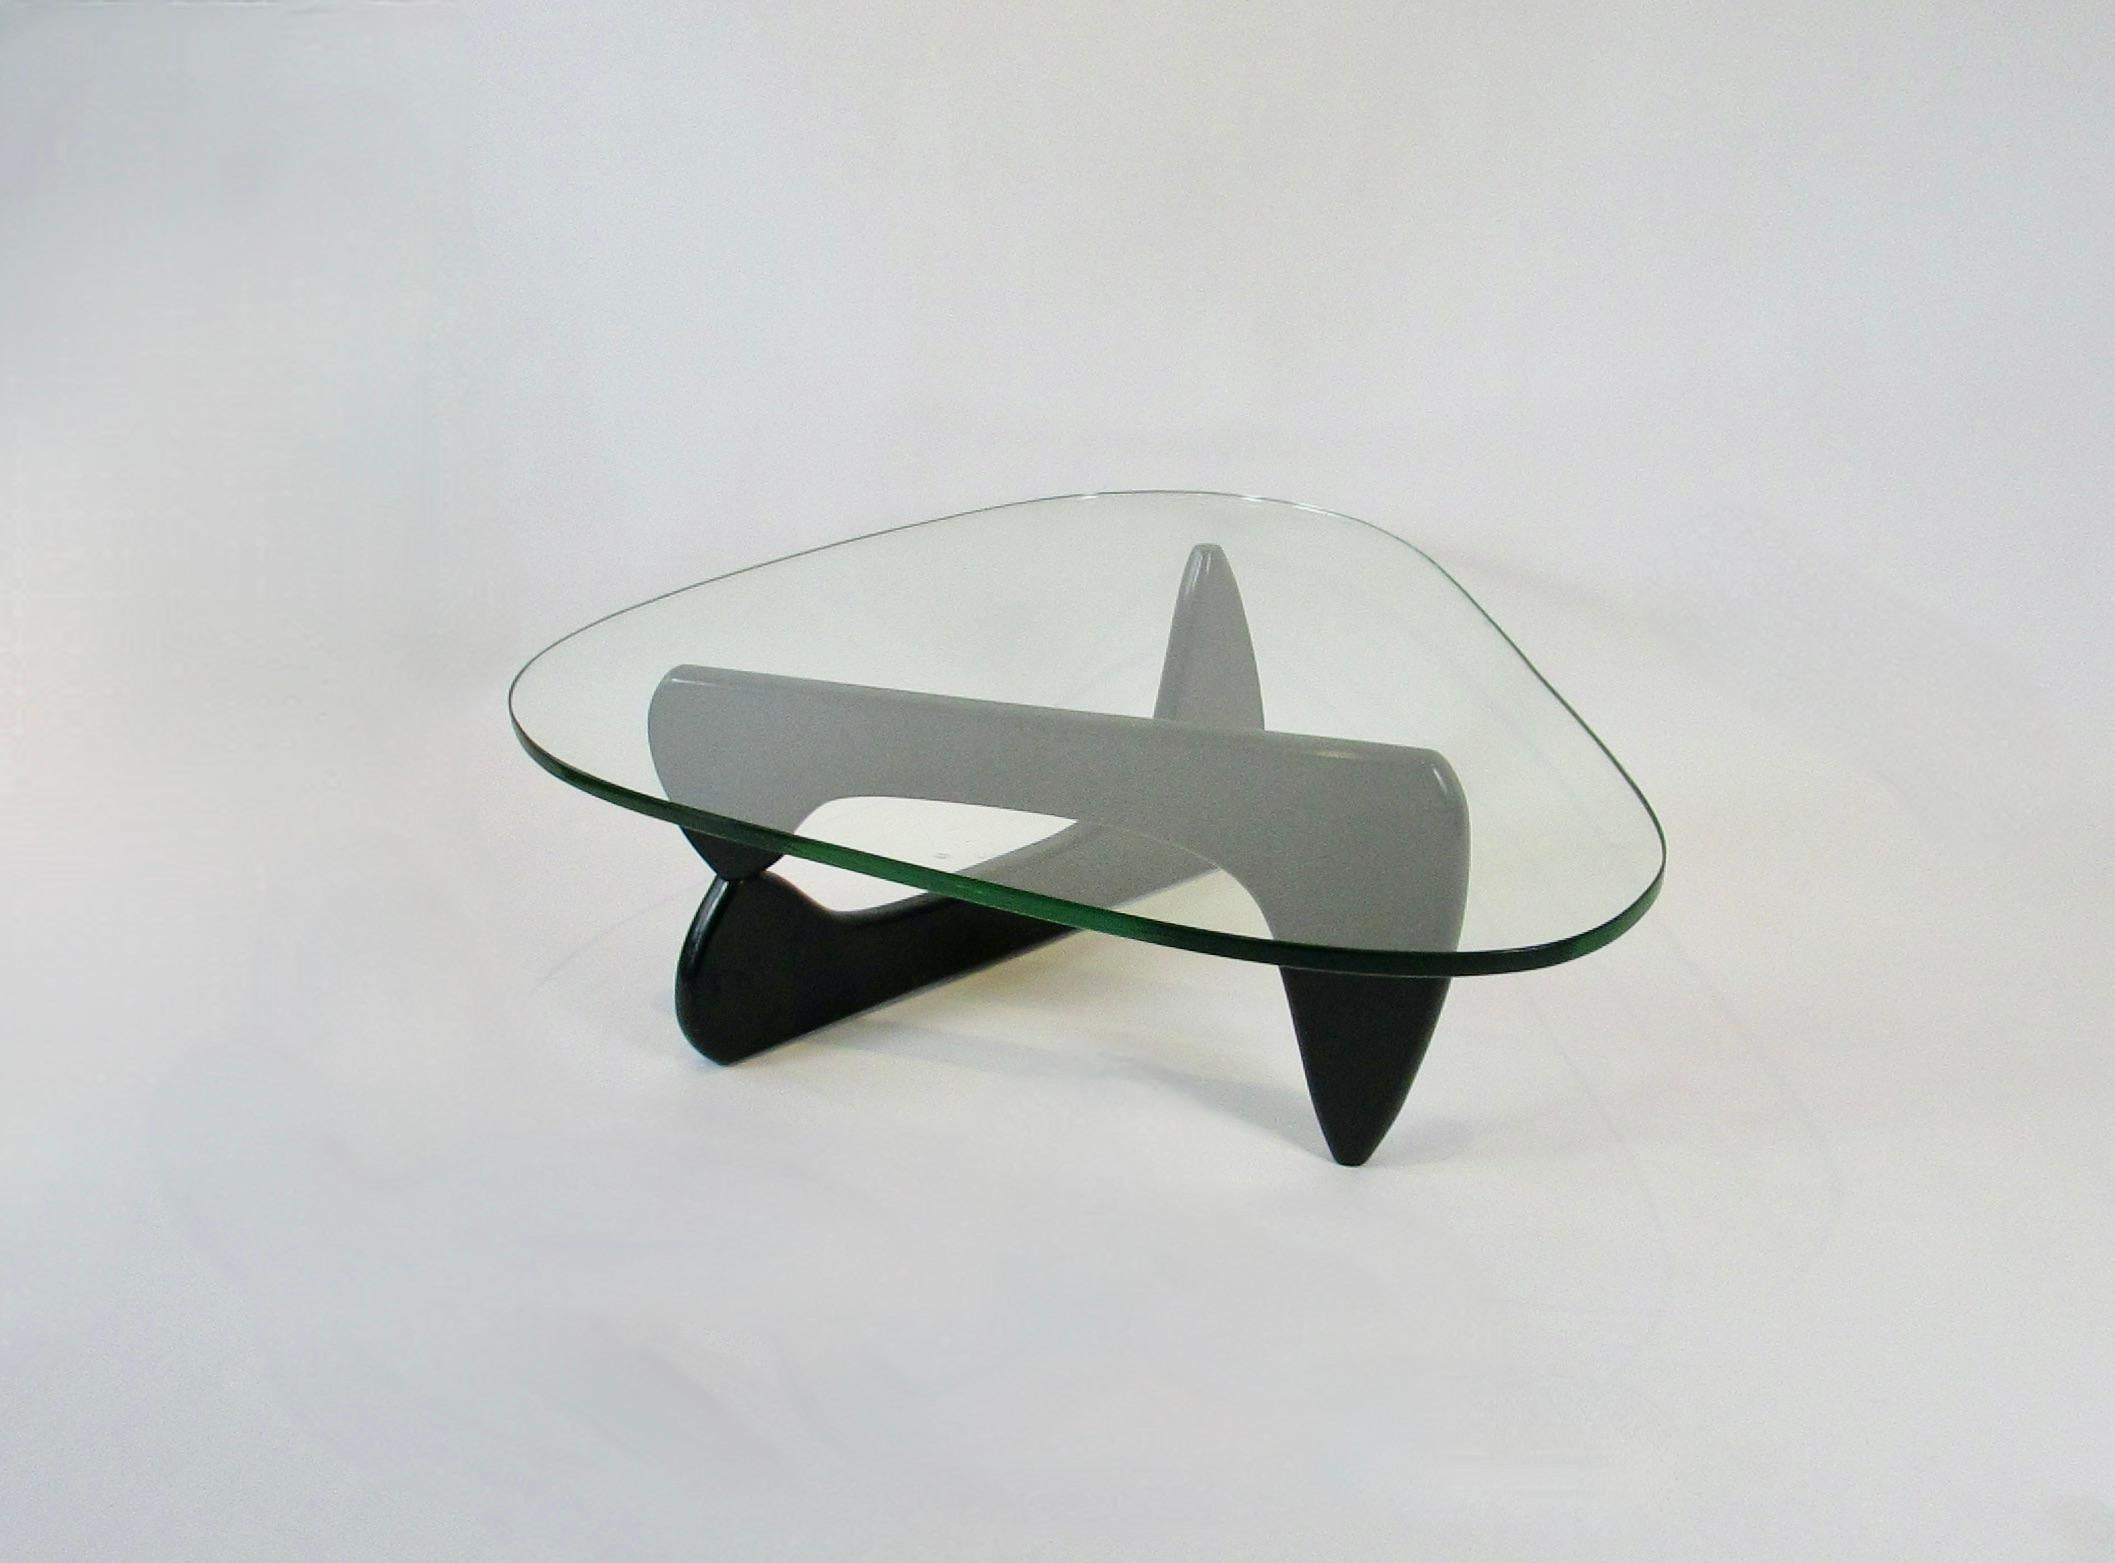 Table basse conçue par le designer américain Isamu Noguchi (1904-1988) pour Herman Miller. Cette table emblématique est composée de deux sculptures en bois massif laqué noir, articulées sur un axe en aluminium caché. Le plateau en verre de 3/4